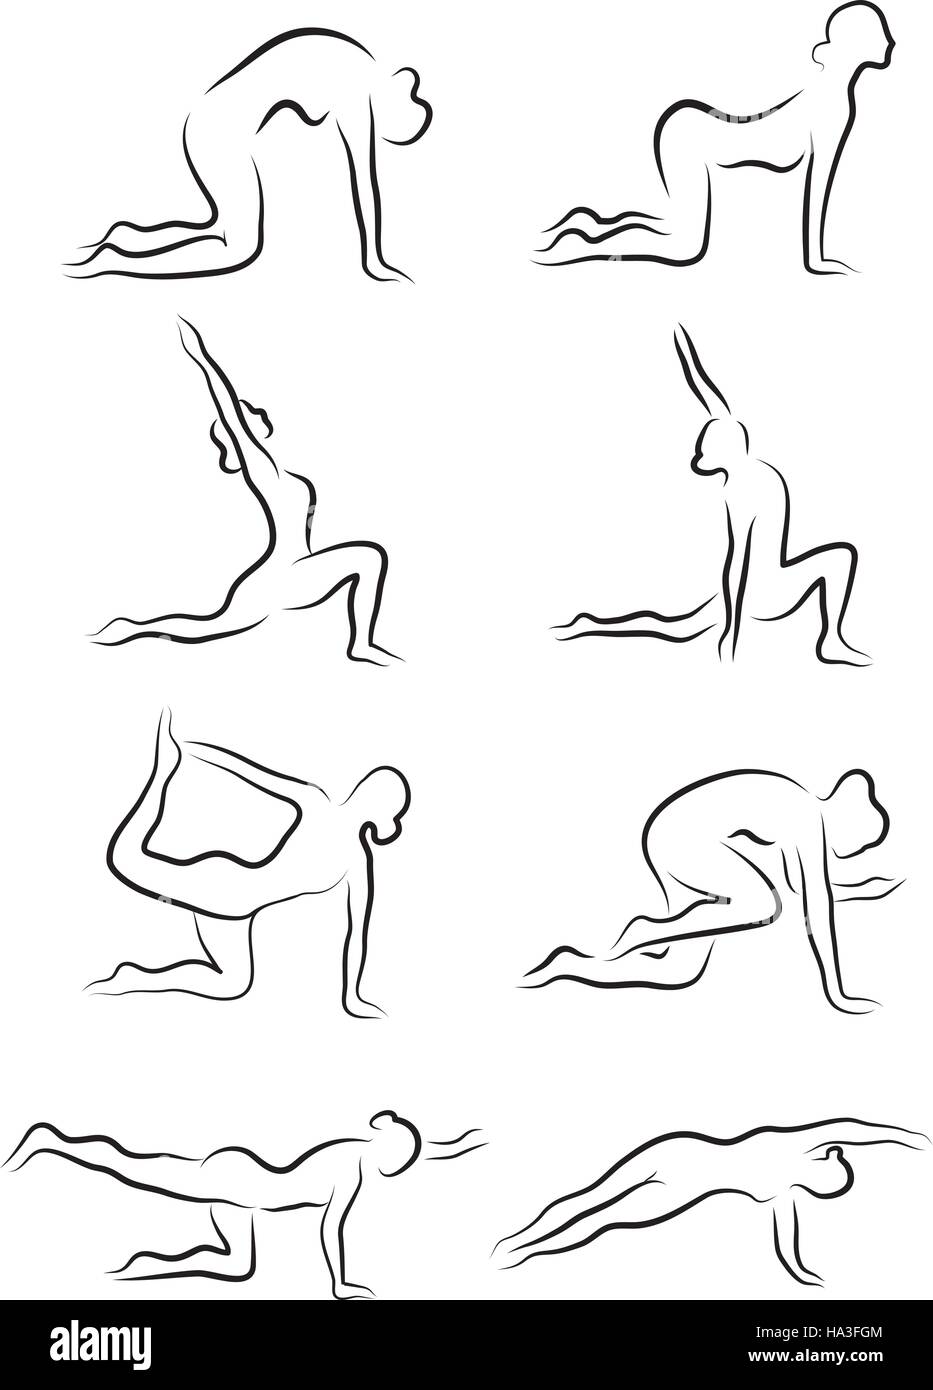 Ensemble de croquis de silhouettes des asanas. La jeune fille est engagée dans le yoga. vector illustration Illustration de Vecteur